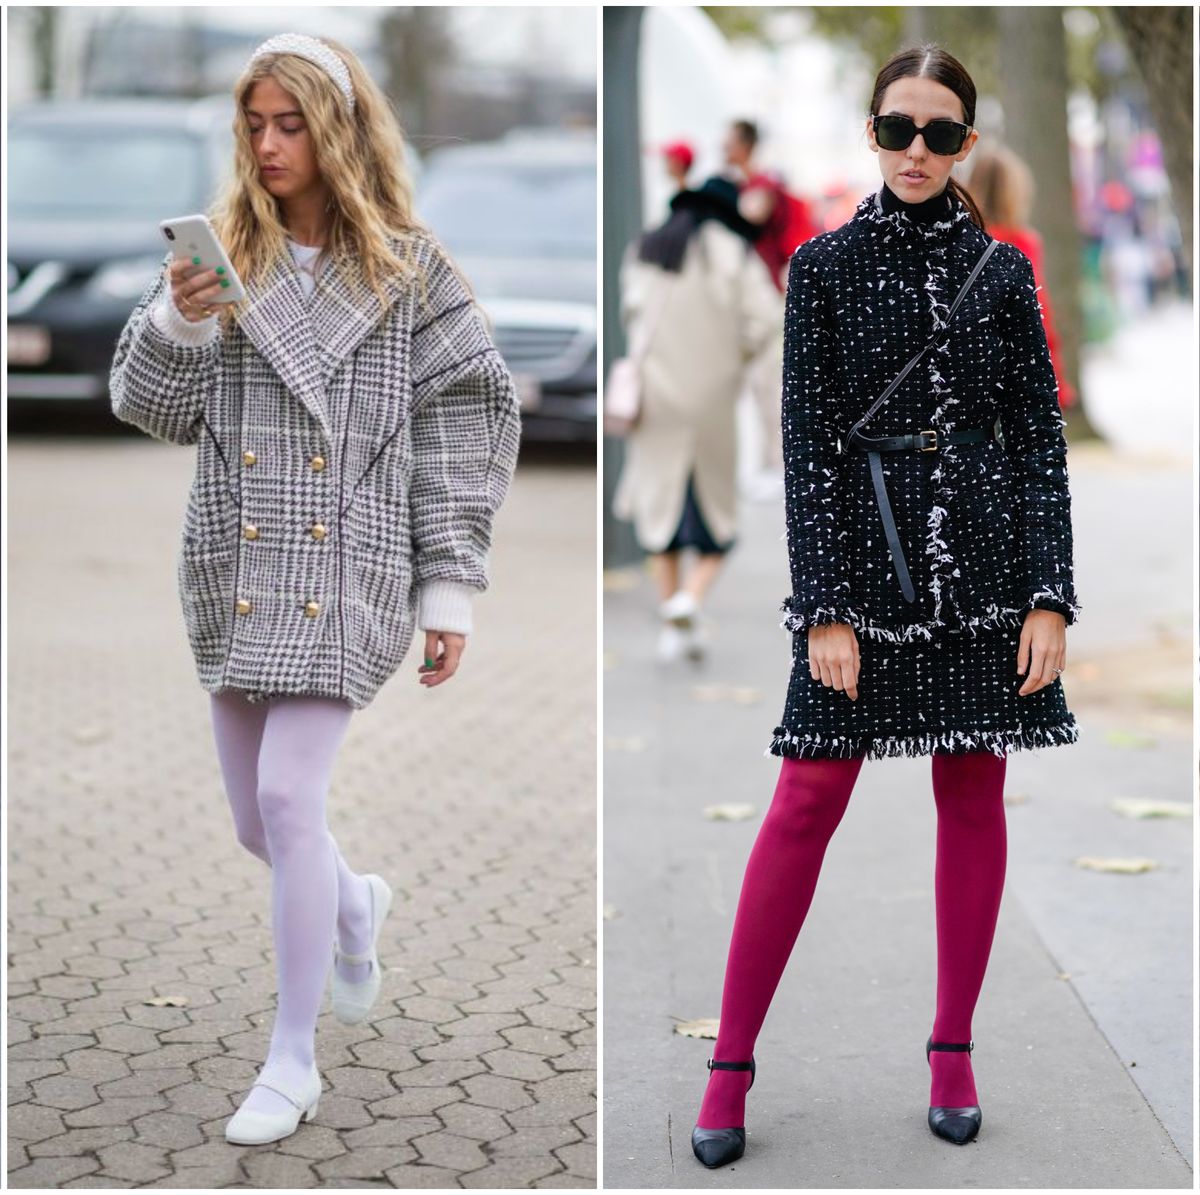 Moda: Las medias blancas, ¿la tendencia viral más fea del invierno?